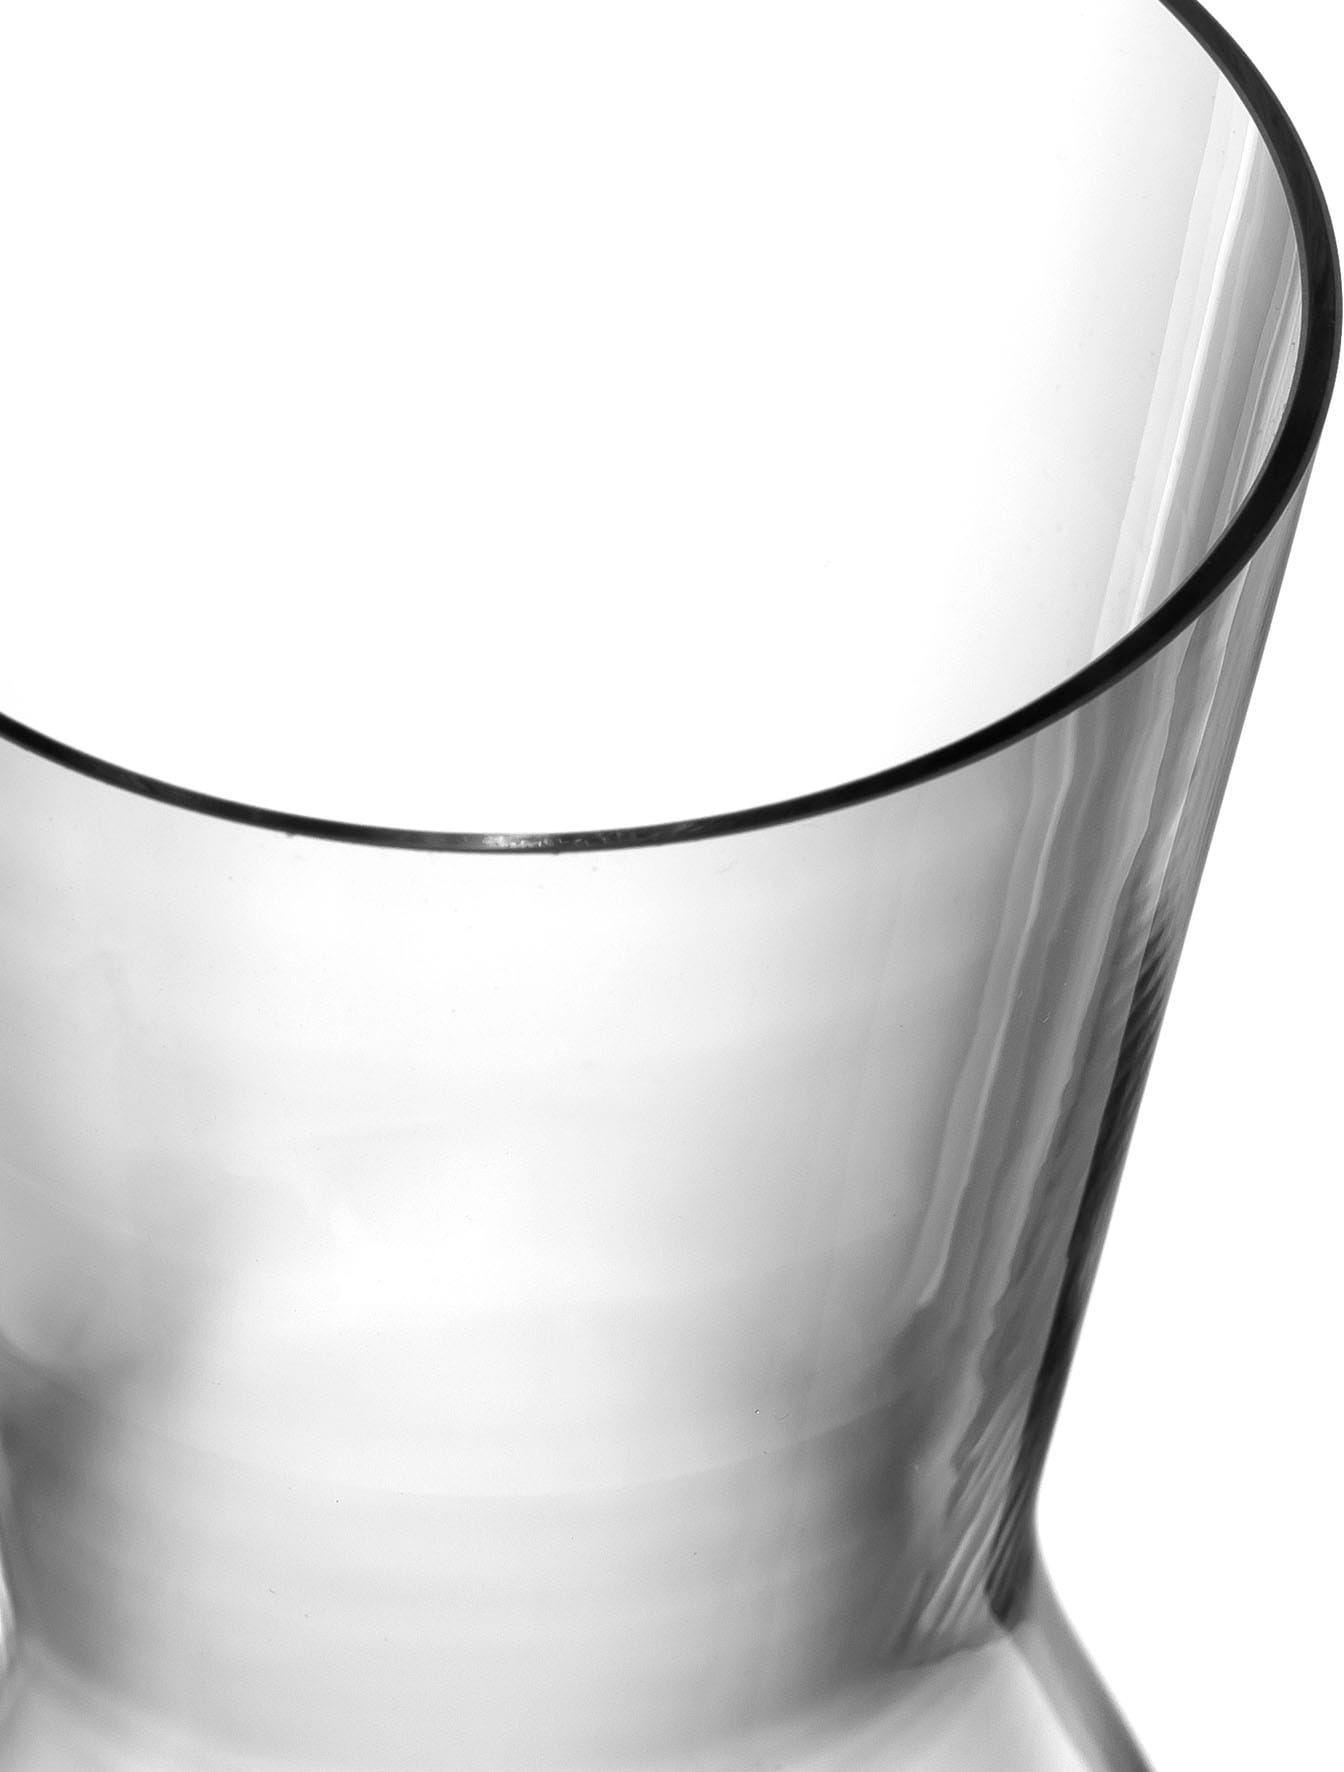 LEONARDO Karaffe »PUCCINI«, Kristallglas, 1000 ml